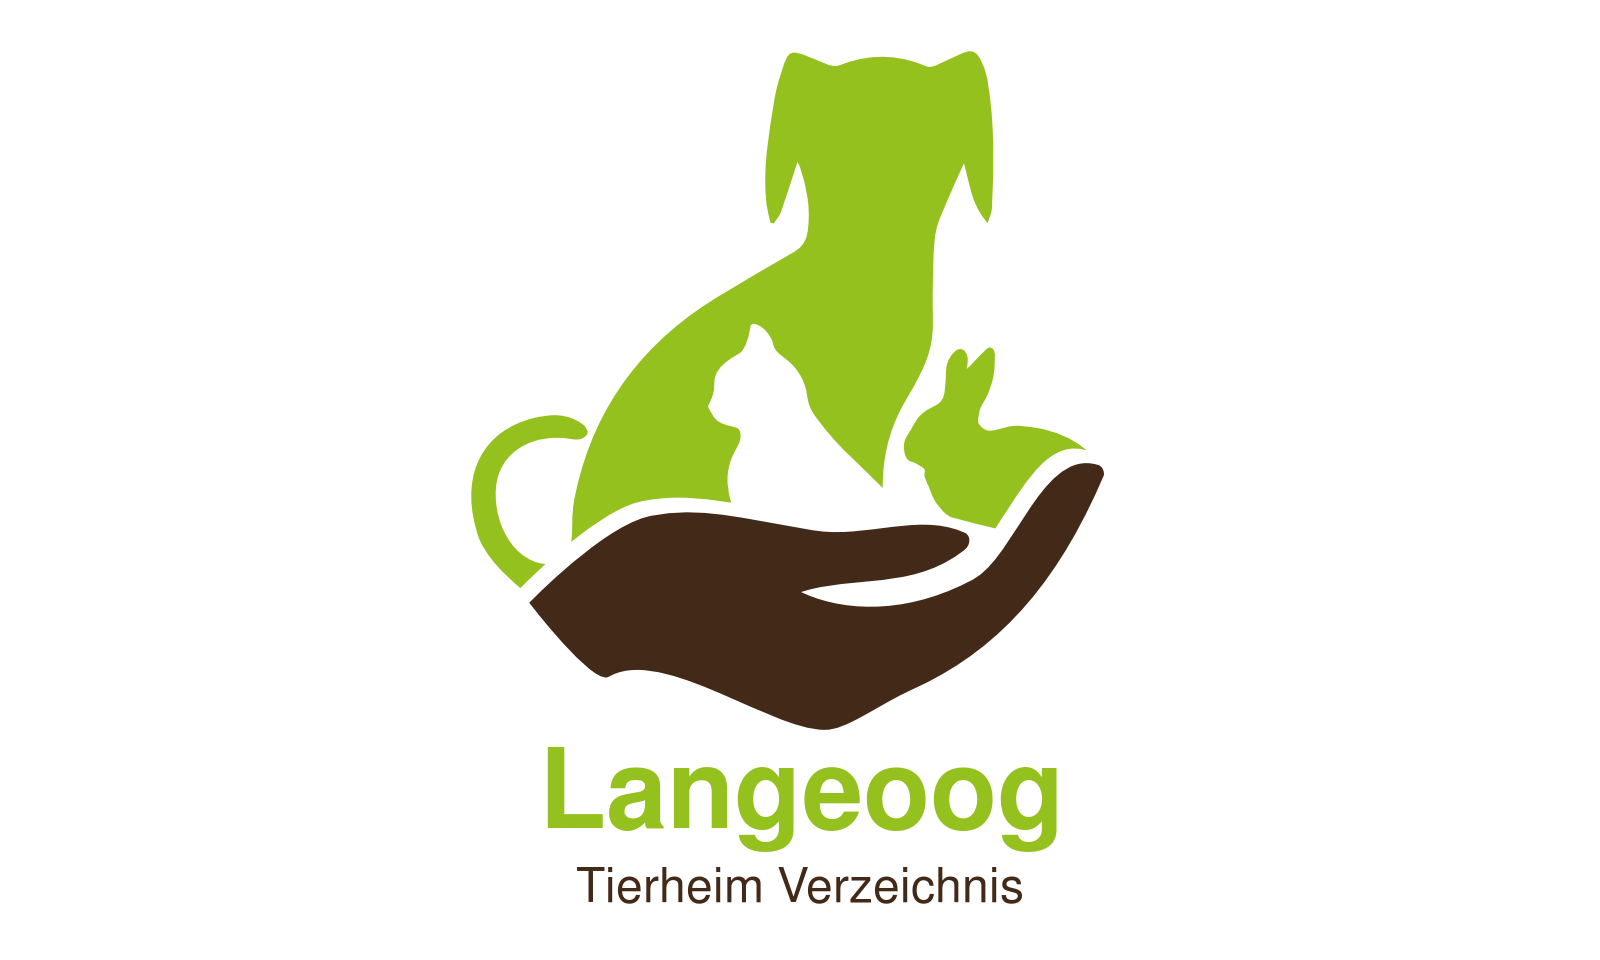 Tierheim Langeoog